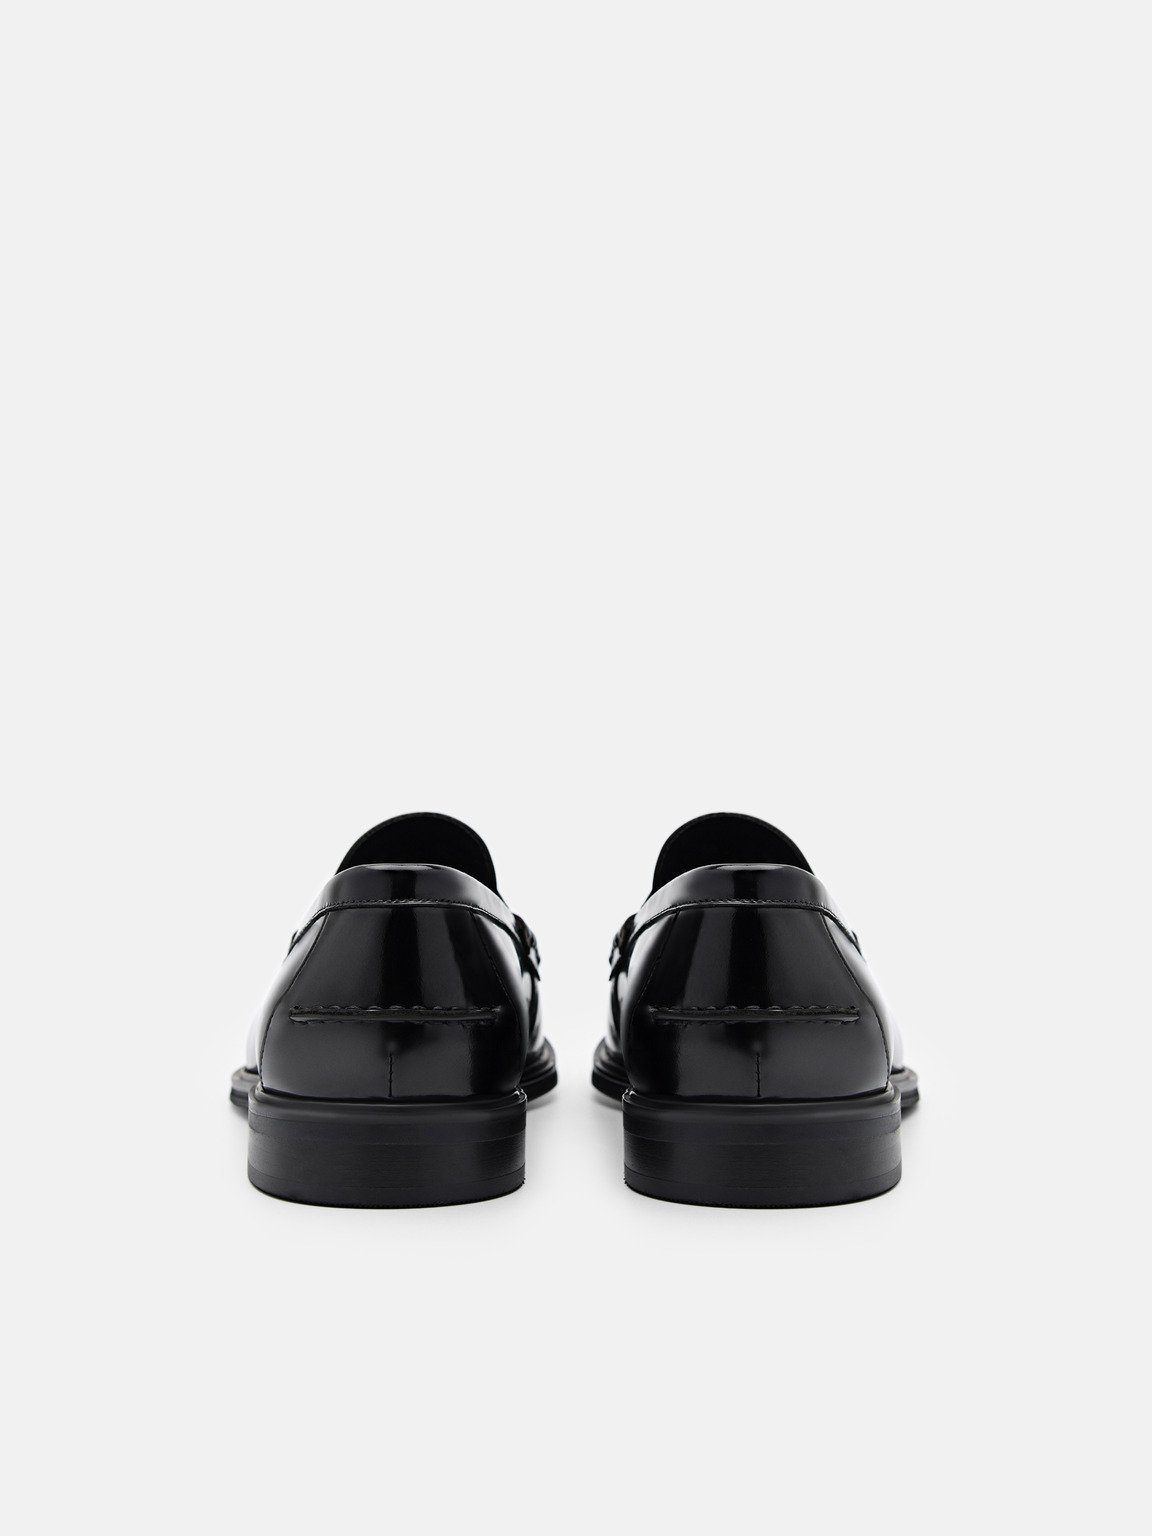 皮革便士樂福鞋, 黑色